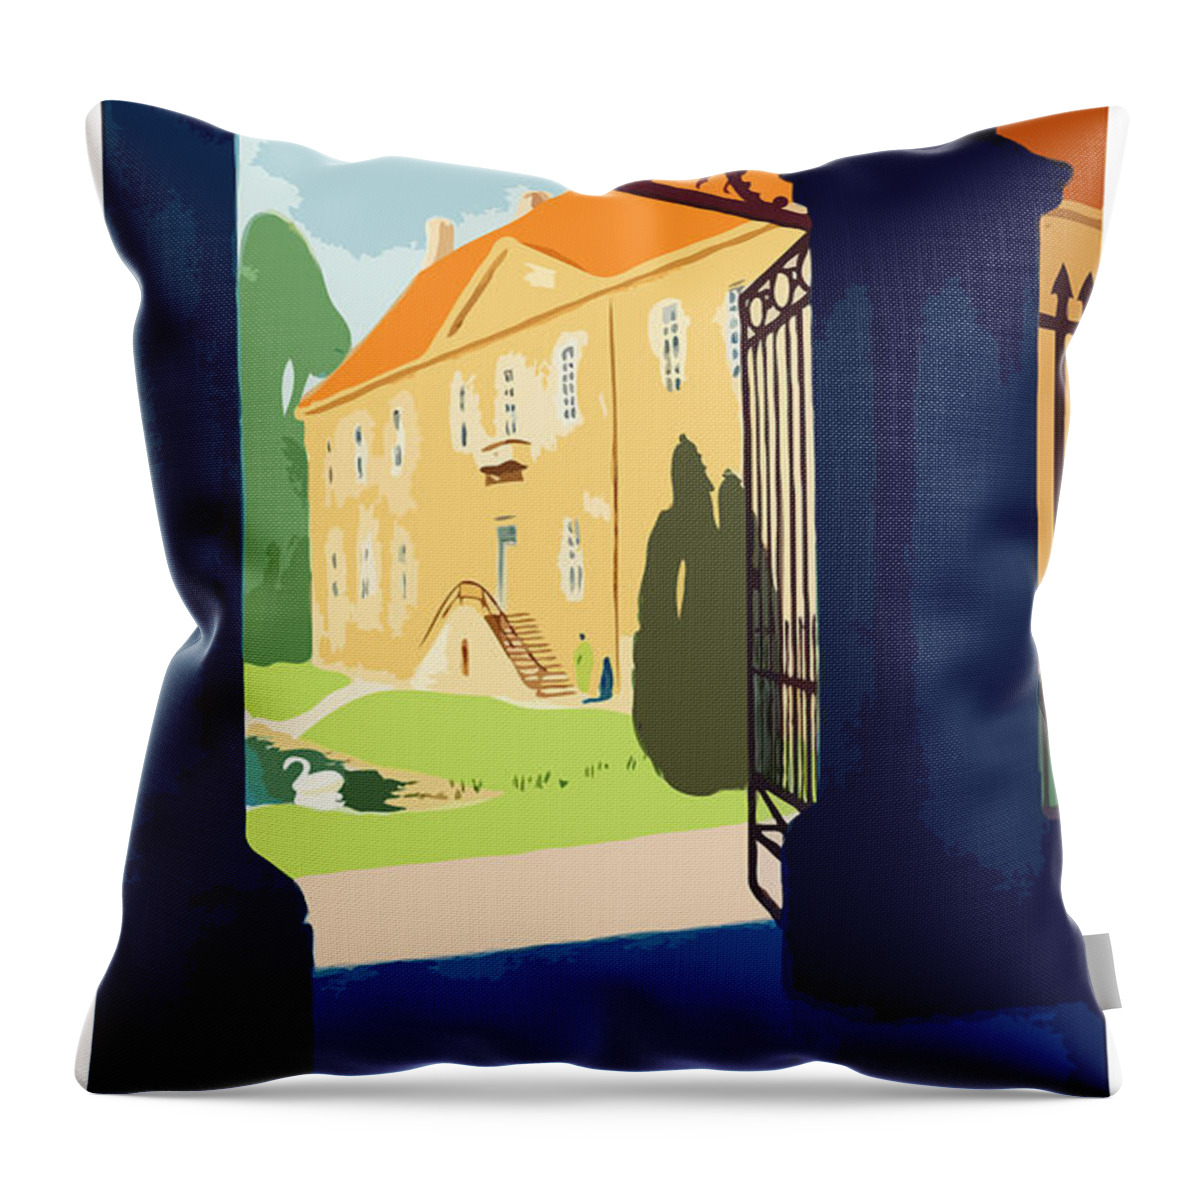 Denmark Throw Pillow featuring the digital art Villa in Denmark by Long Shot